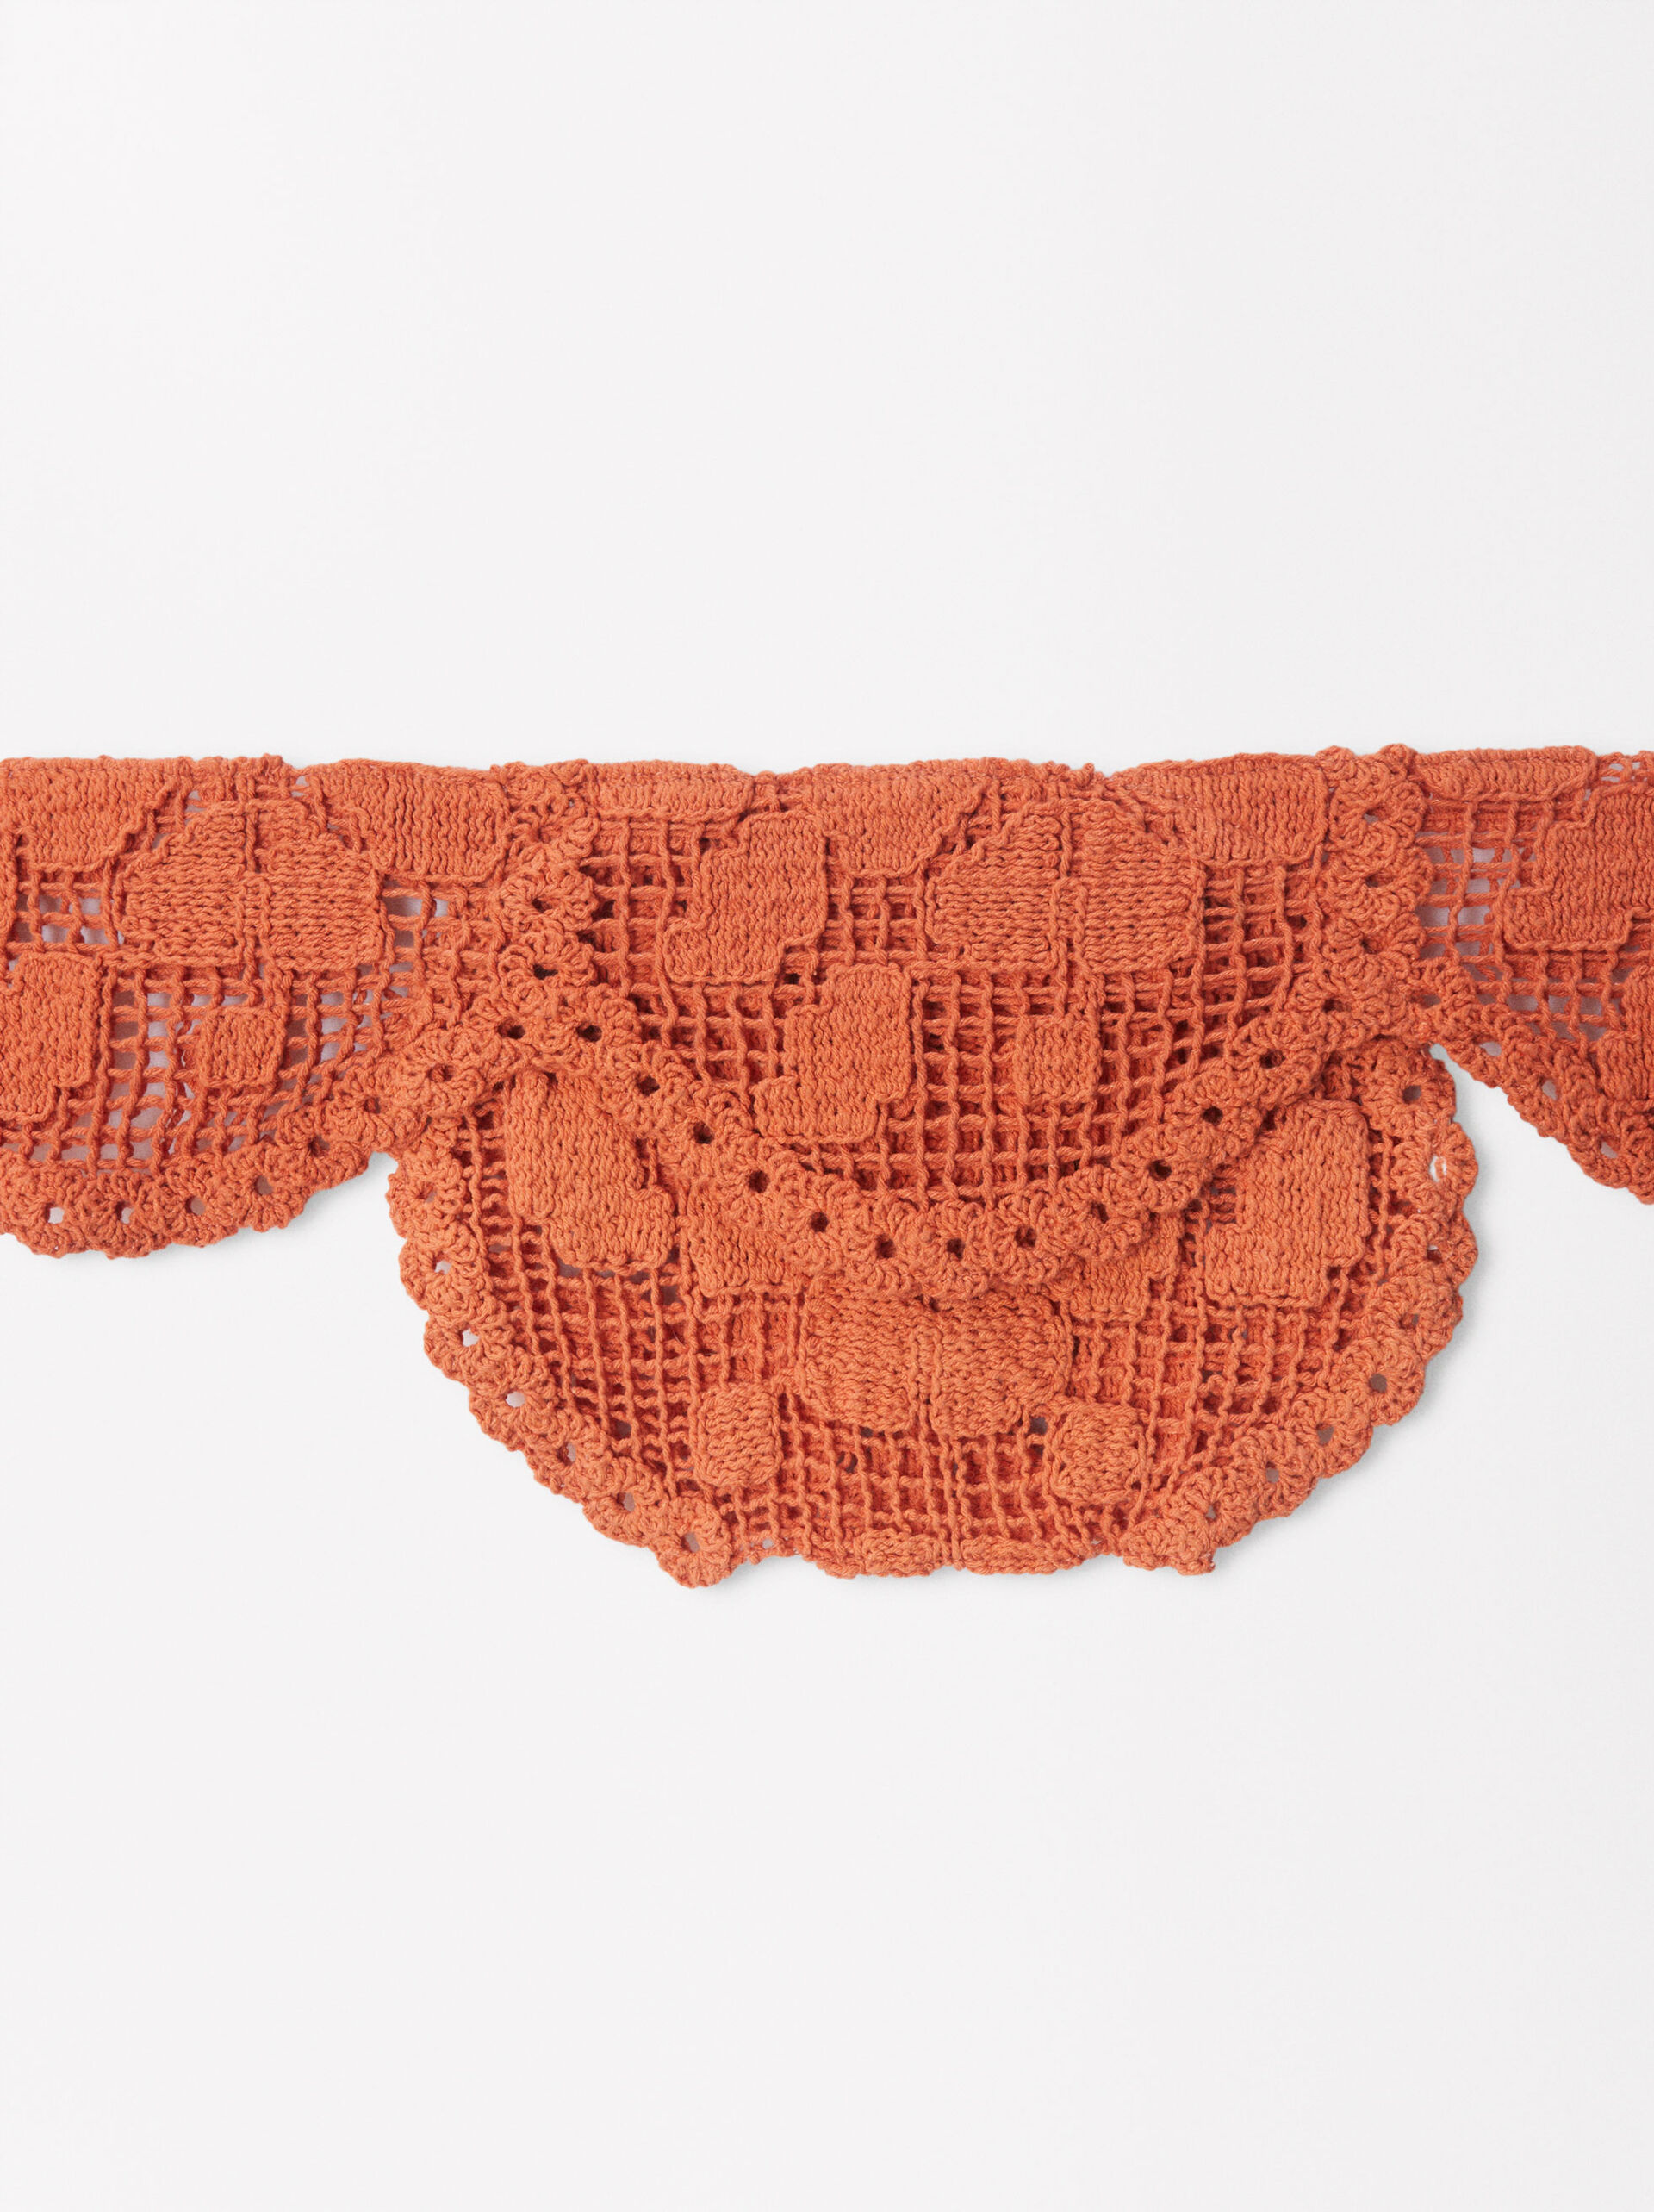 Exclusivo Online - Mala De Cintura Crochet image number 1.0